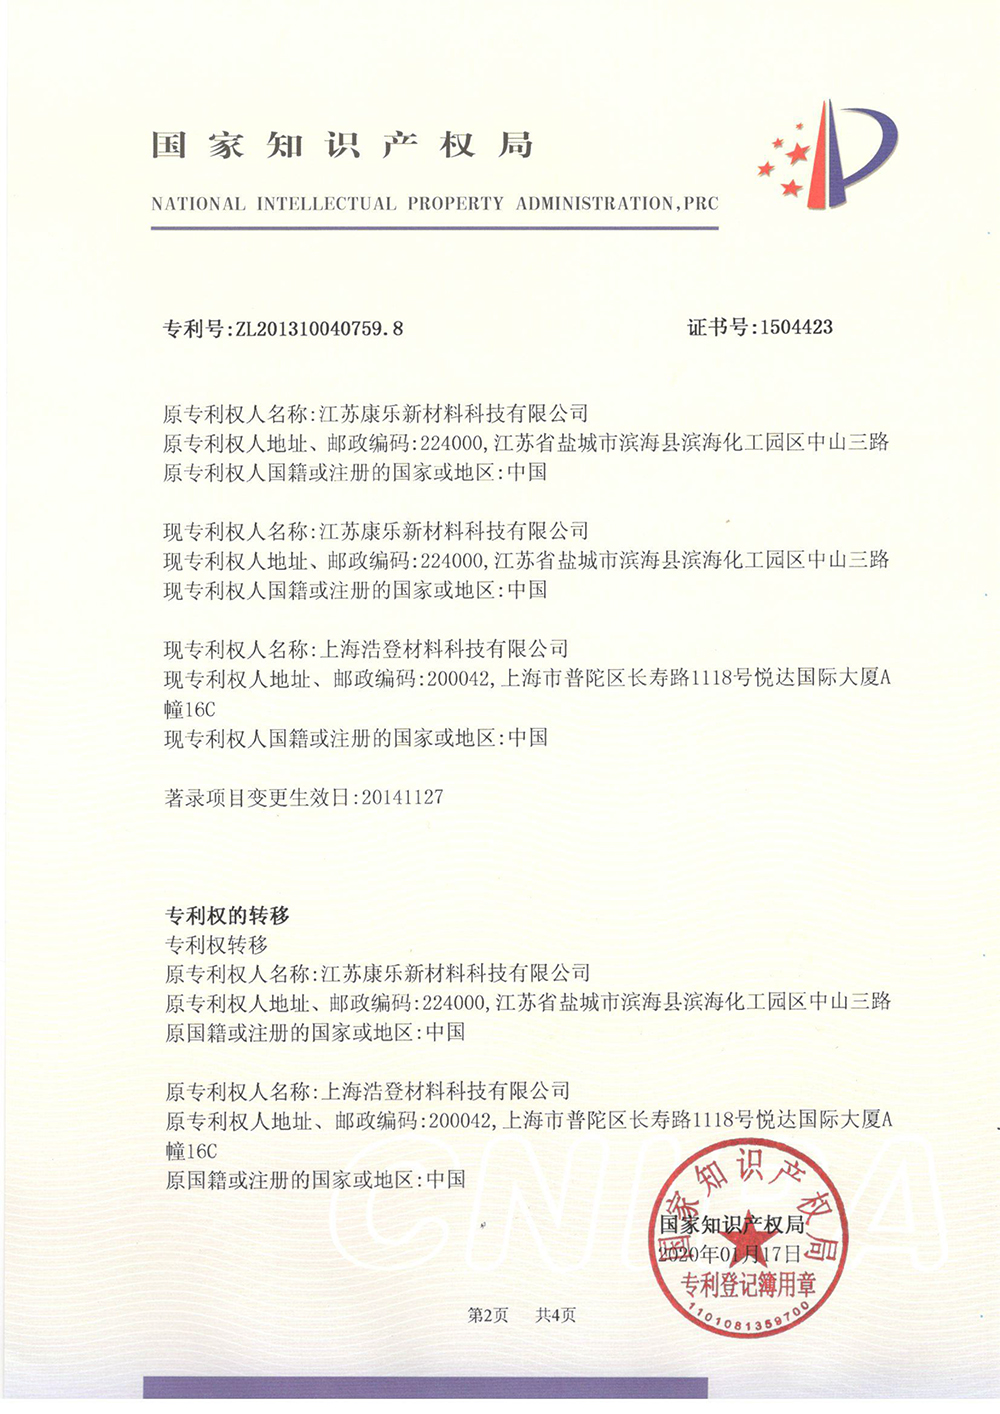 2-乙基-4-甲基咪唑的方法-专利登记簿-2_上海浩登材料股份有限公司